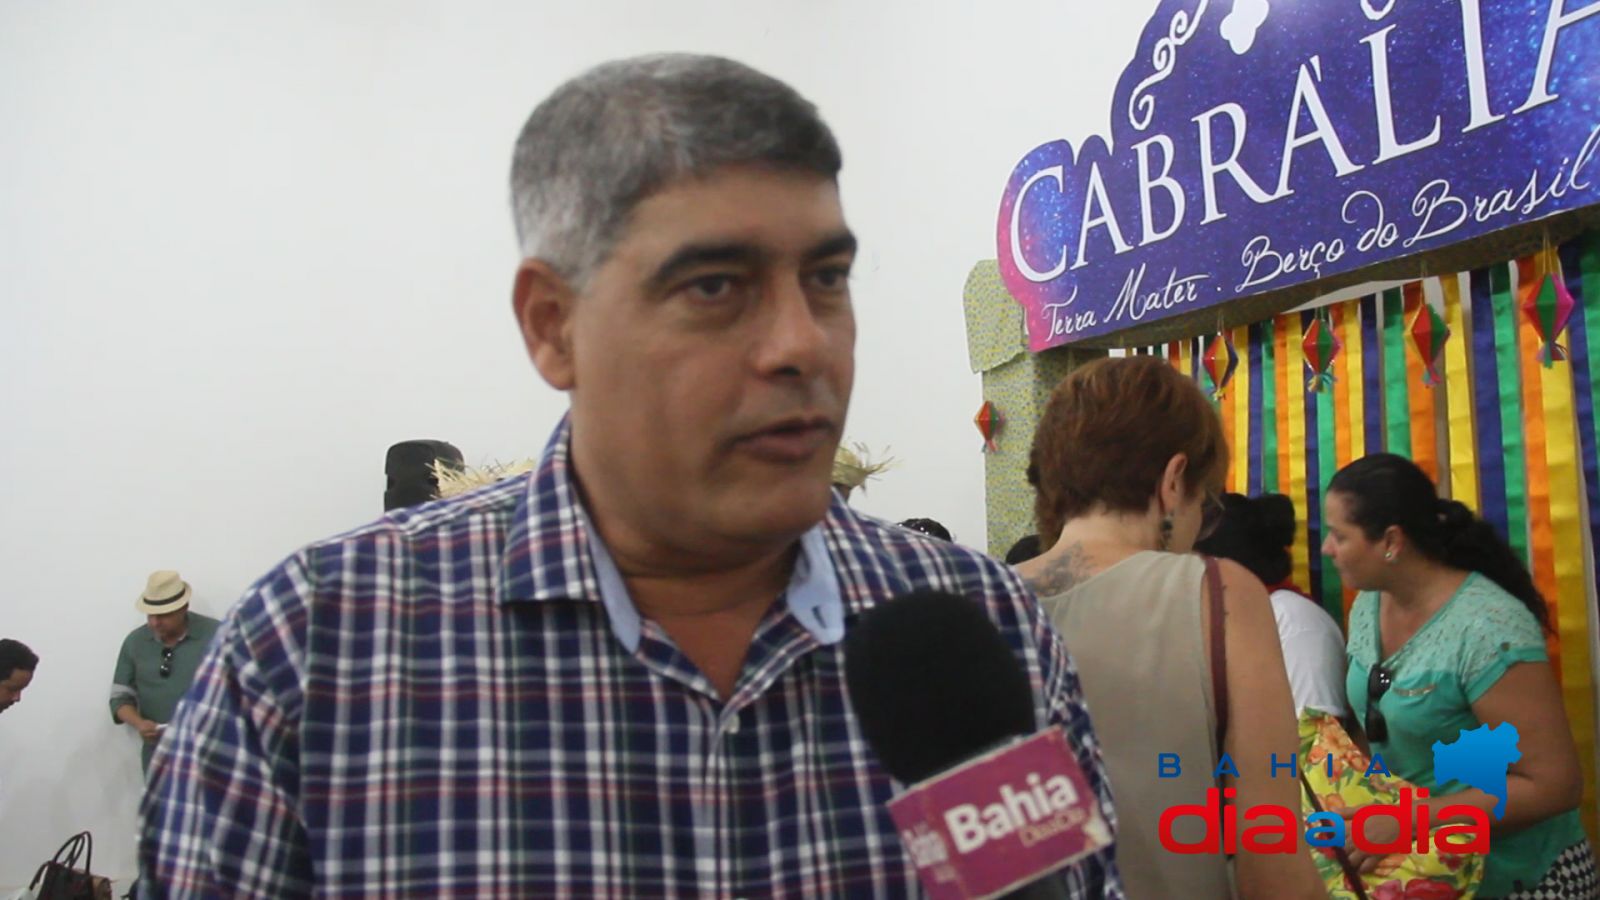 Prefeito de Santa Cruz Cabrlia, Agnelo Santos, destacou a qualidade da edio do evento. (Foto: BAHIA DIA A DIA)